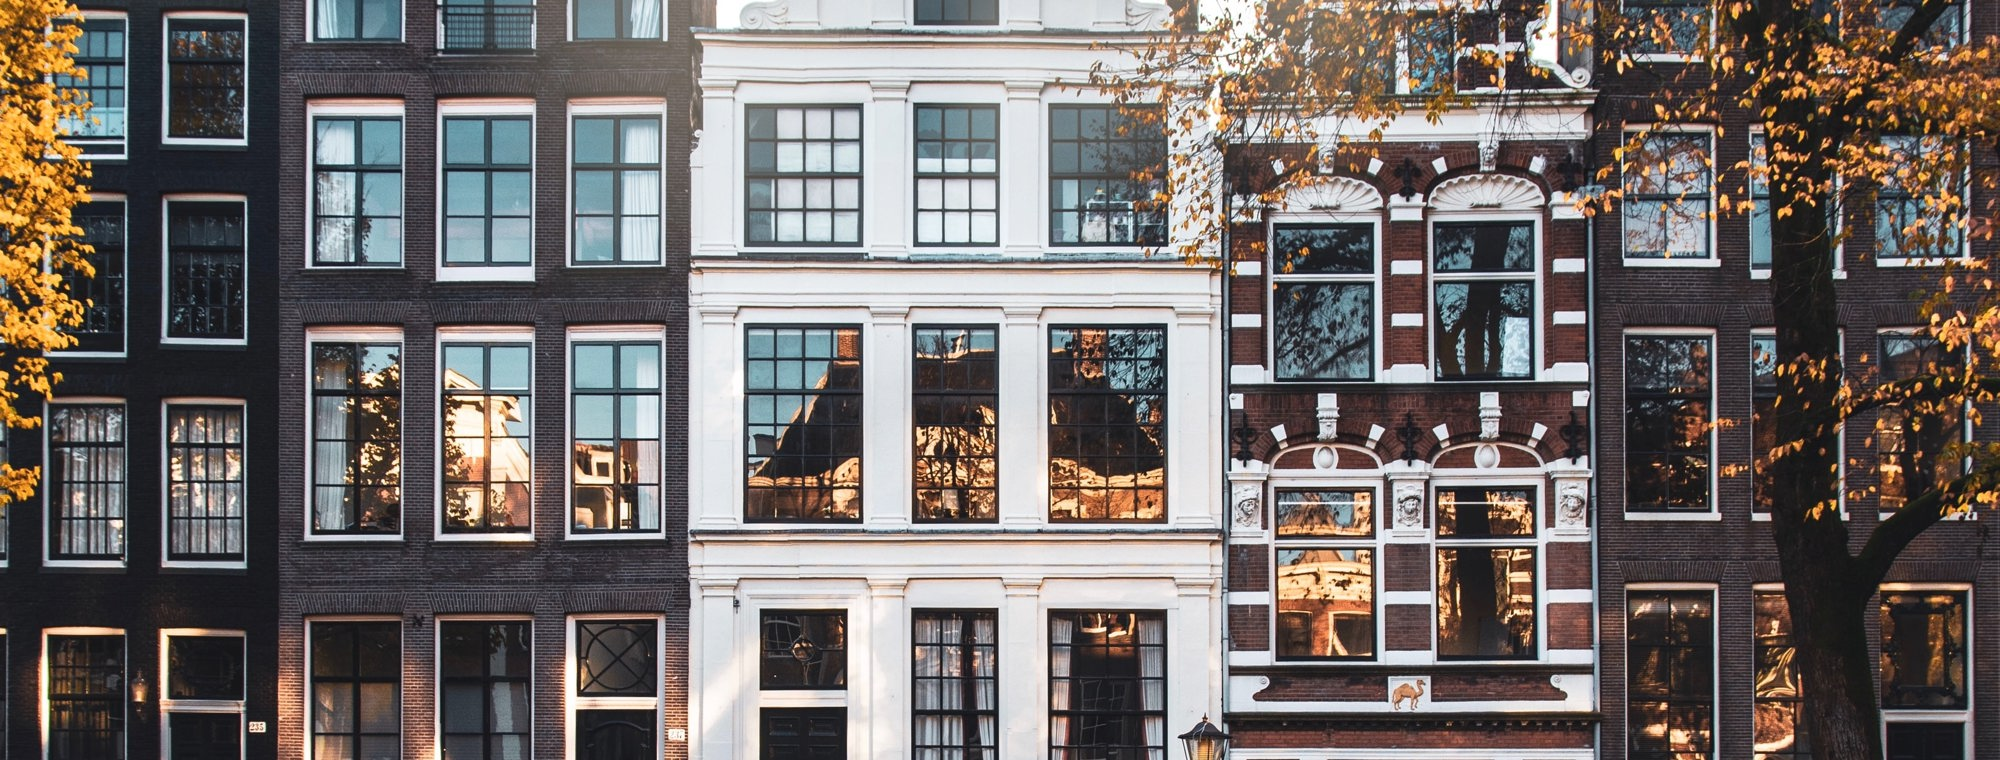 Rijtjeshuizen in Amsterdam